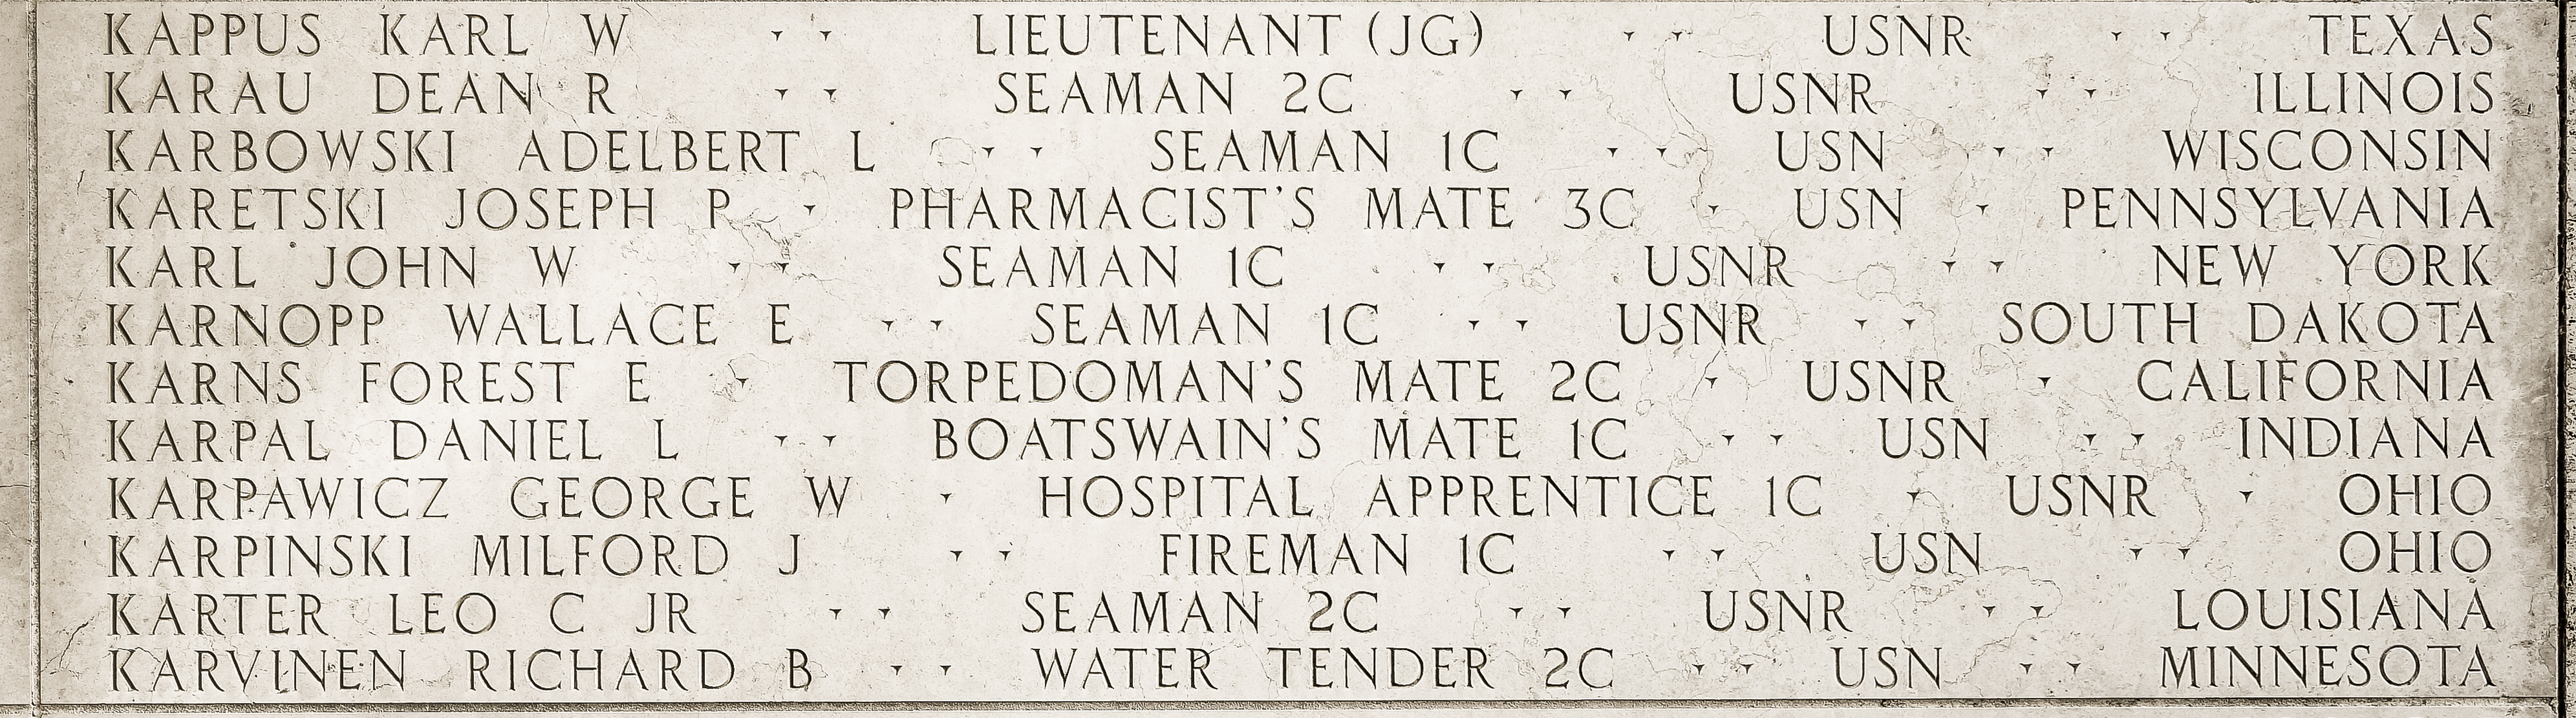 Forest E. Karns, Torpedoman's Mate Second Class